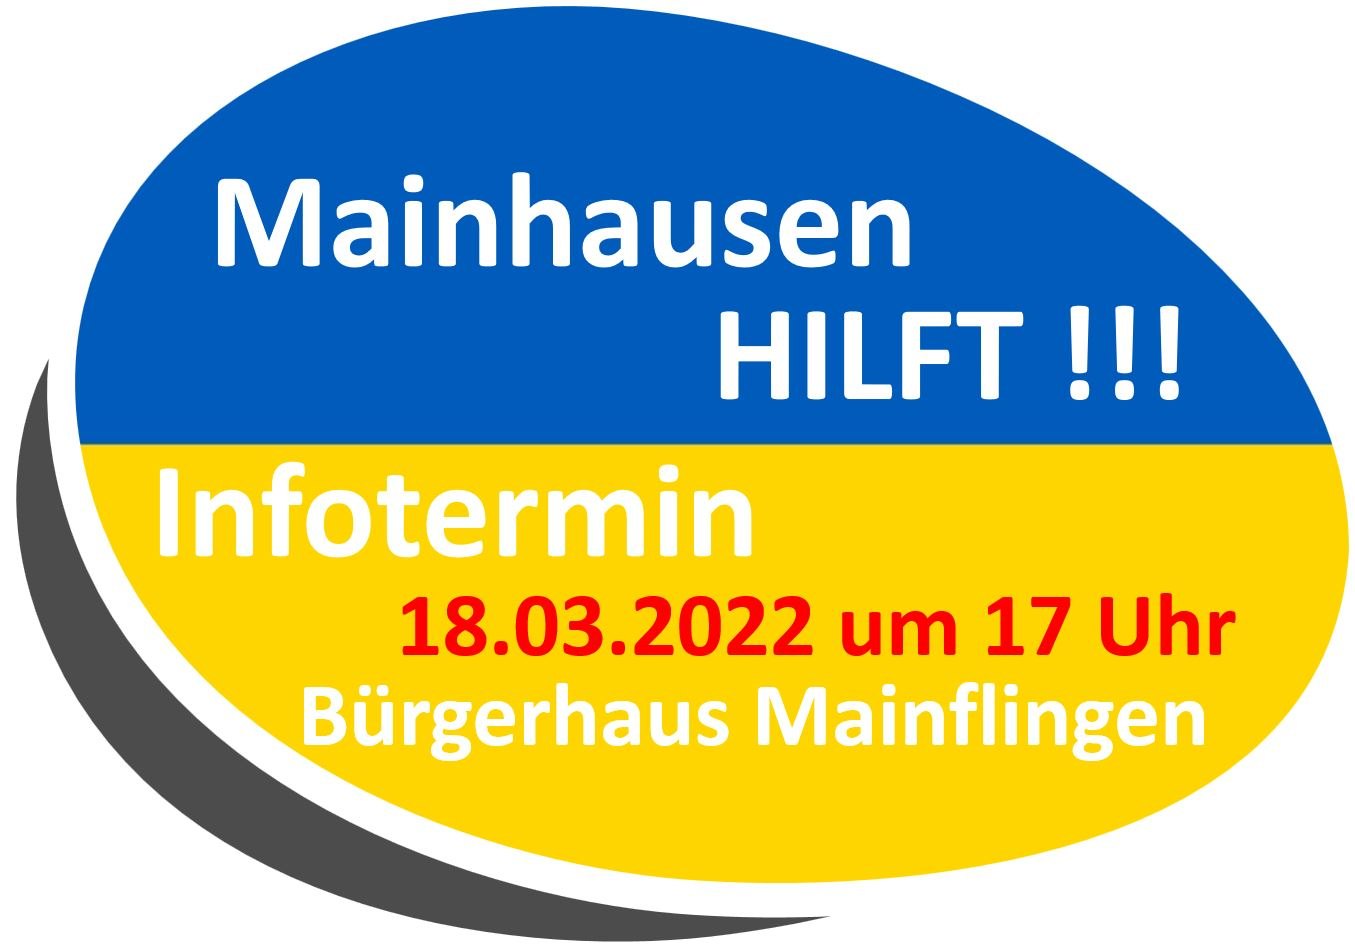 Mainhausen_hilft_Infotermin